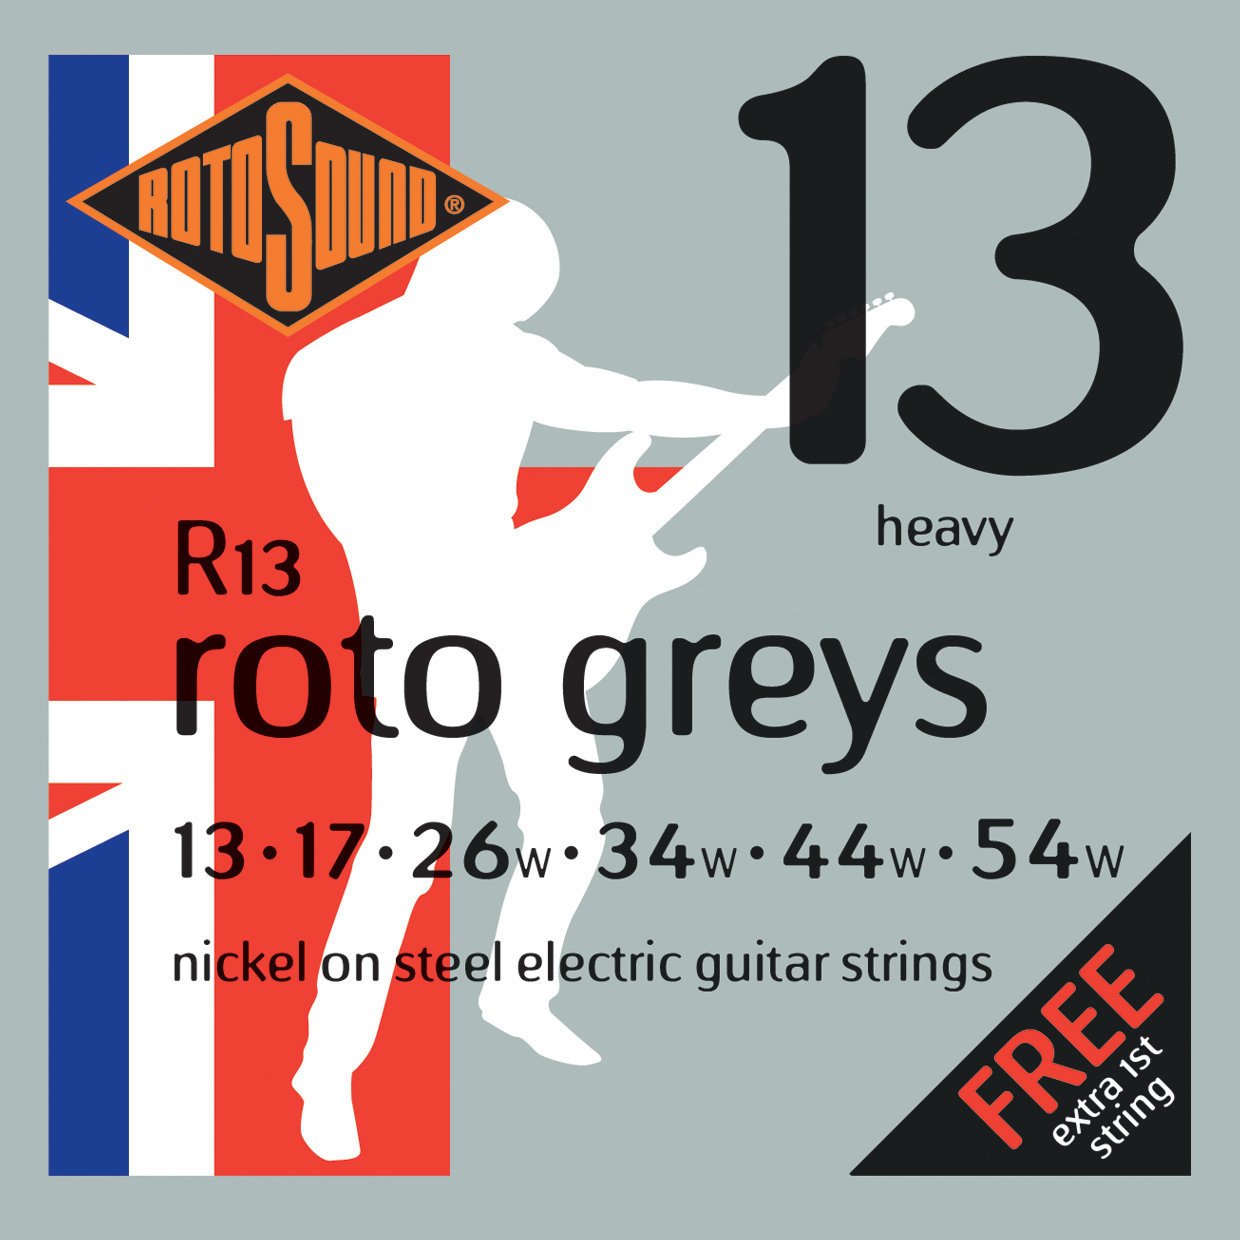 E-guitar strings Rotosound R13